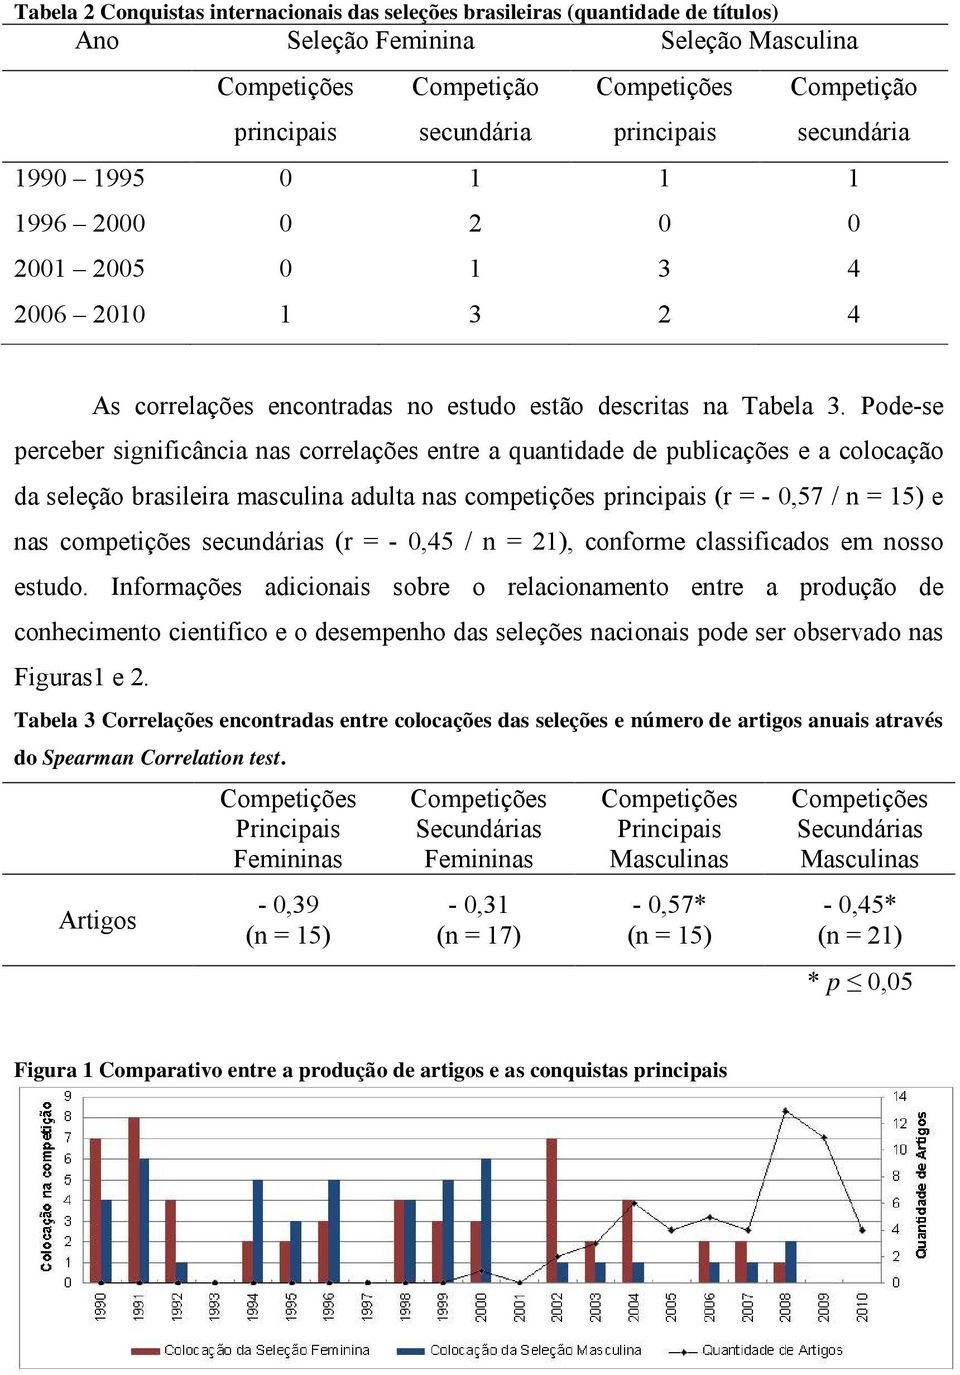 Pode-se perceber significância nas correlações entre a quantidade de publicações e a colocação da seleção brasileira masculina adulta nas competições principais (r = - 0,57 / n = 15) e nas